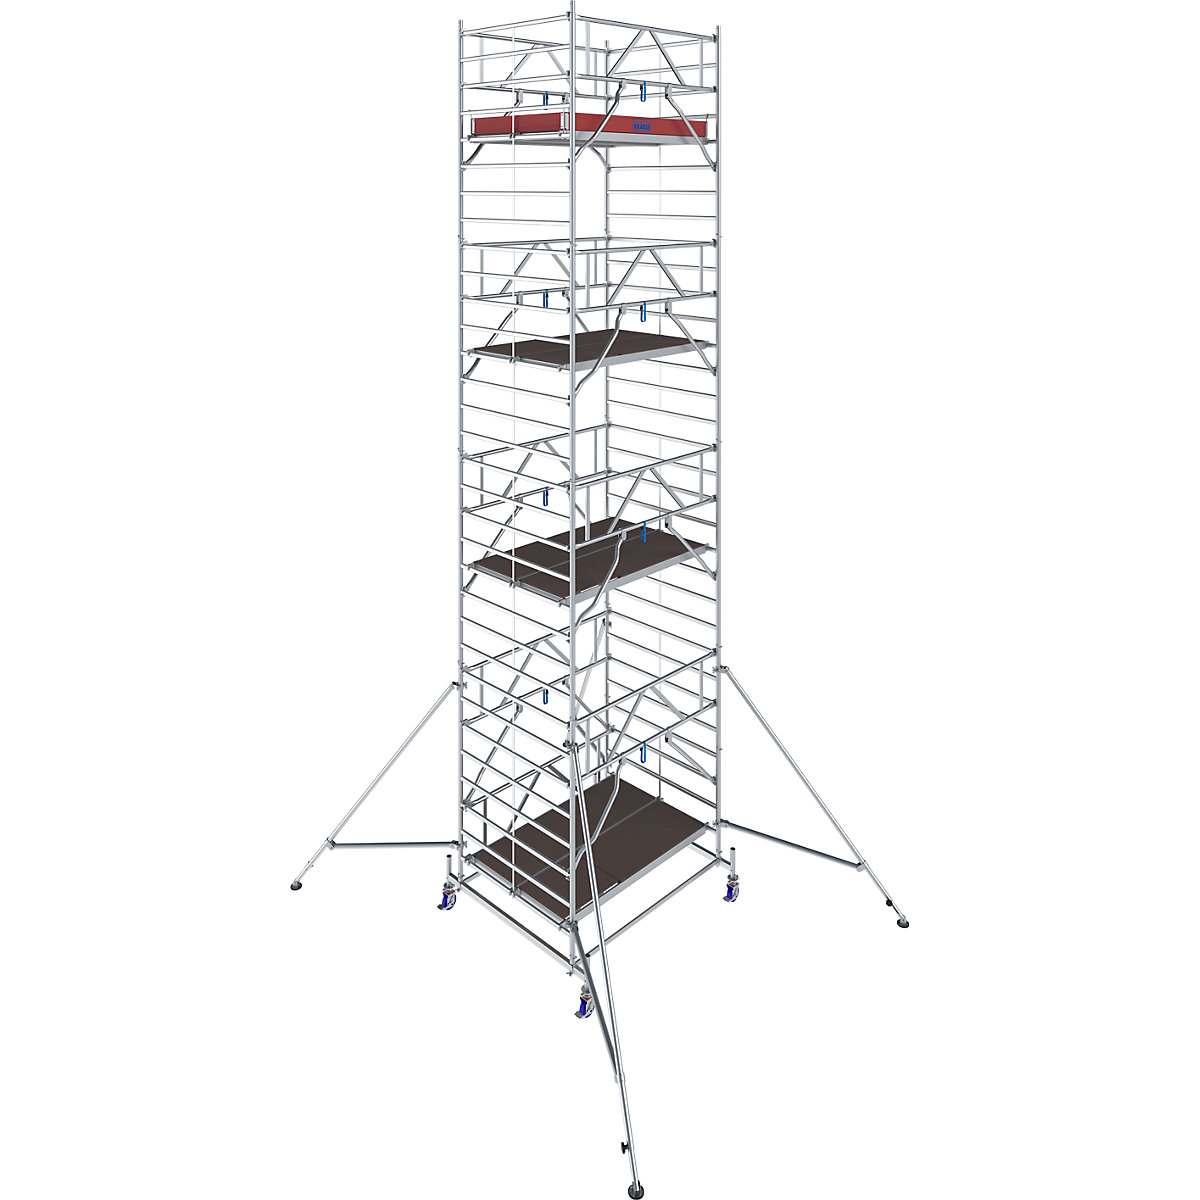 Échafaudage roulant STABILO série 50 – KRAUSE, longueur plate-forme 2,50 m, hauteur de travail 9,40 m-7